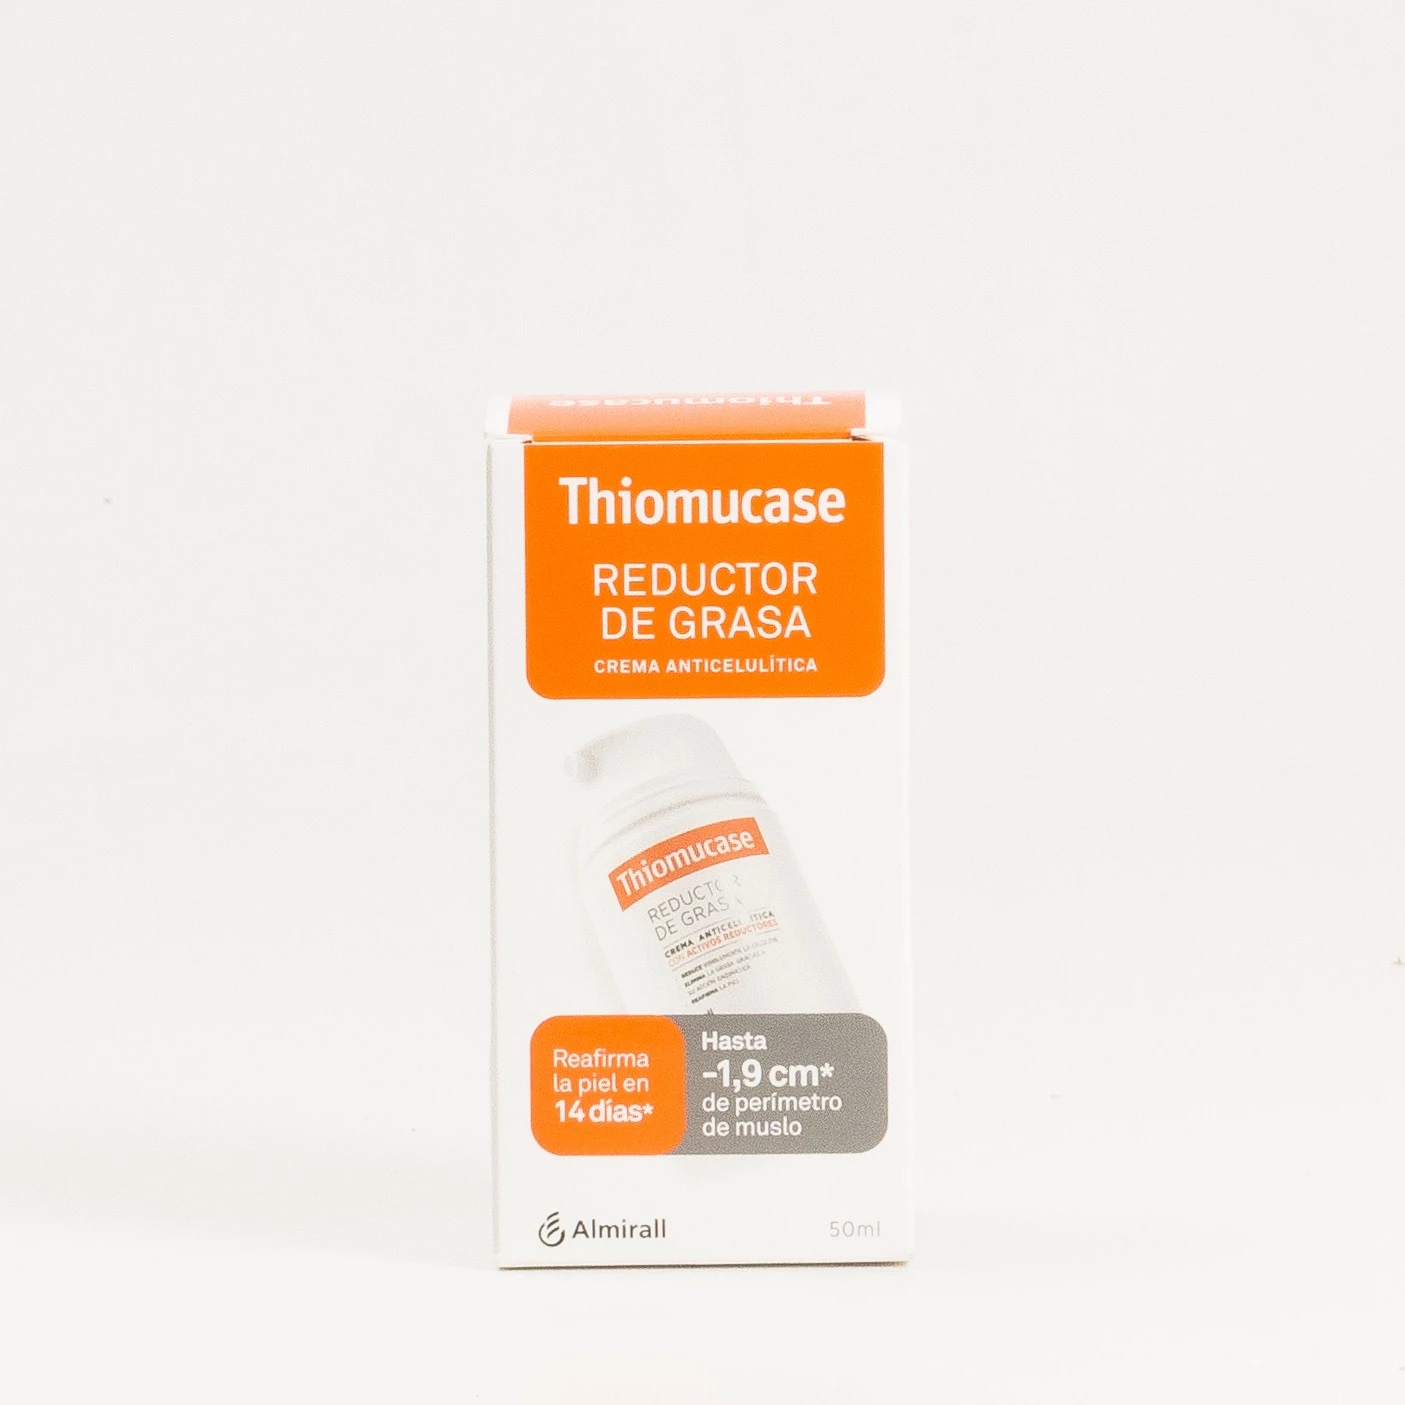 Comprar Thiomucase Reductor de grasa crema anticelulítica, 50ml al